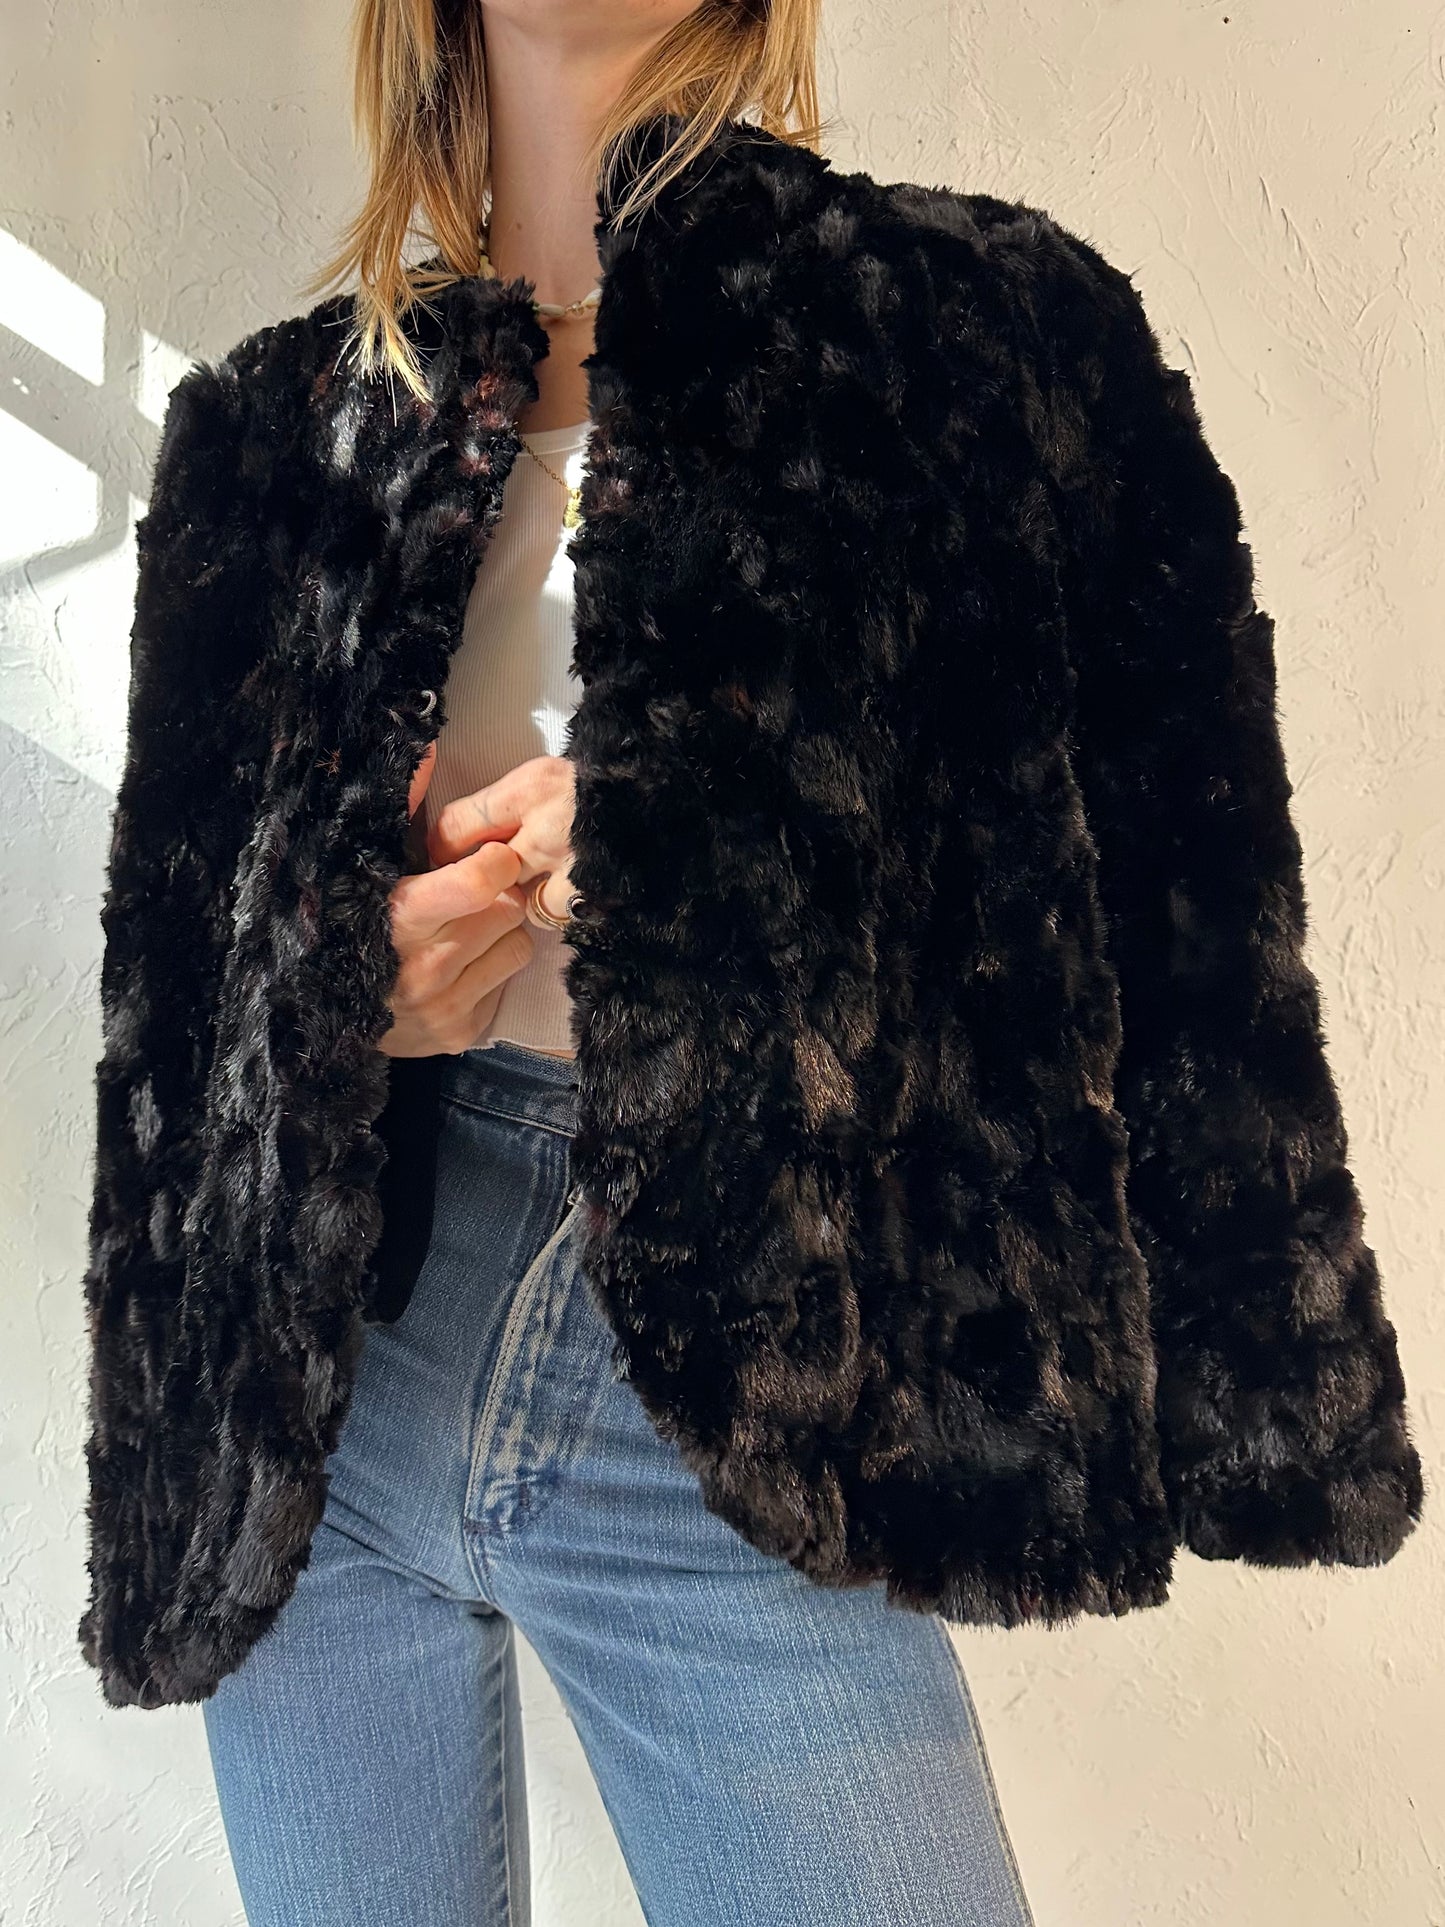 Vintage Black Fur Shall / One Size